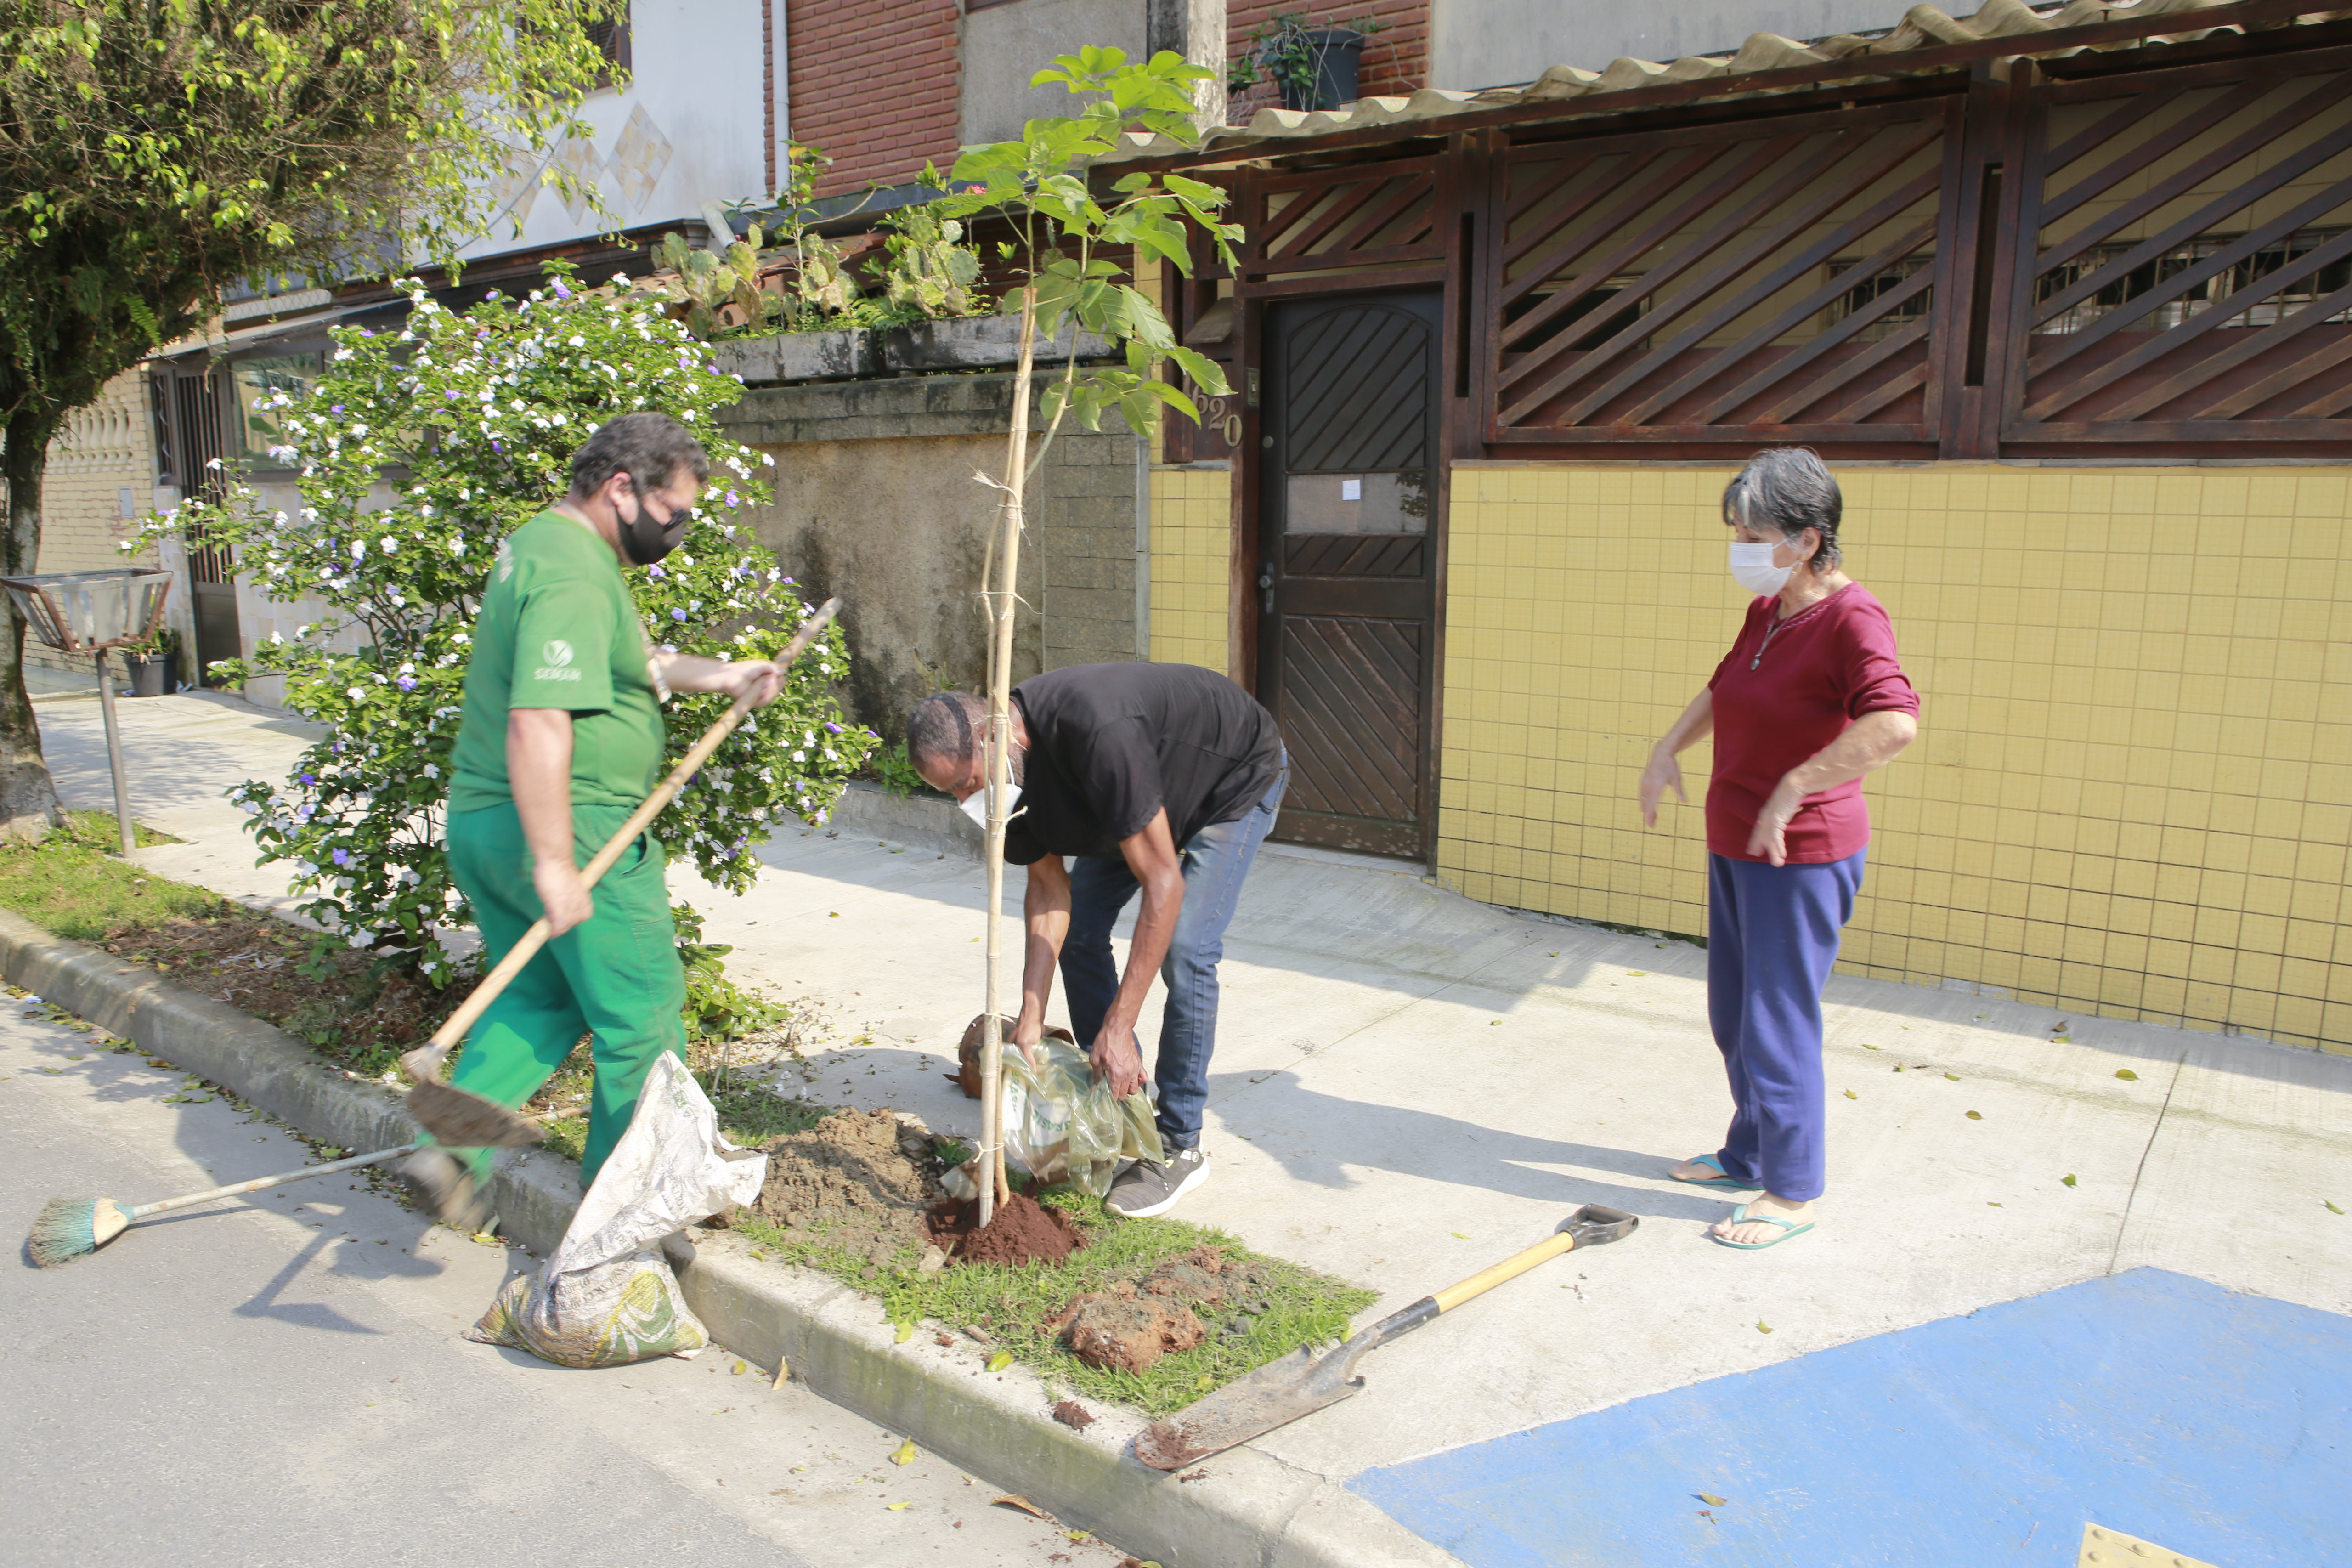 Adesão ao projeto “Cidade mais verde” marca Dia da Árvore